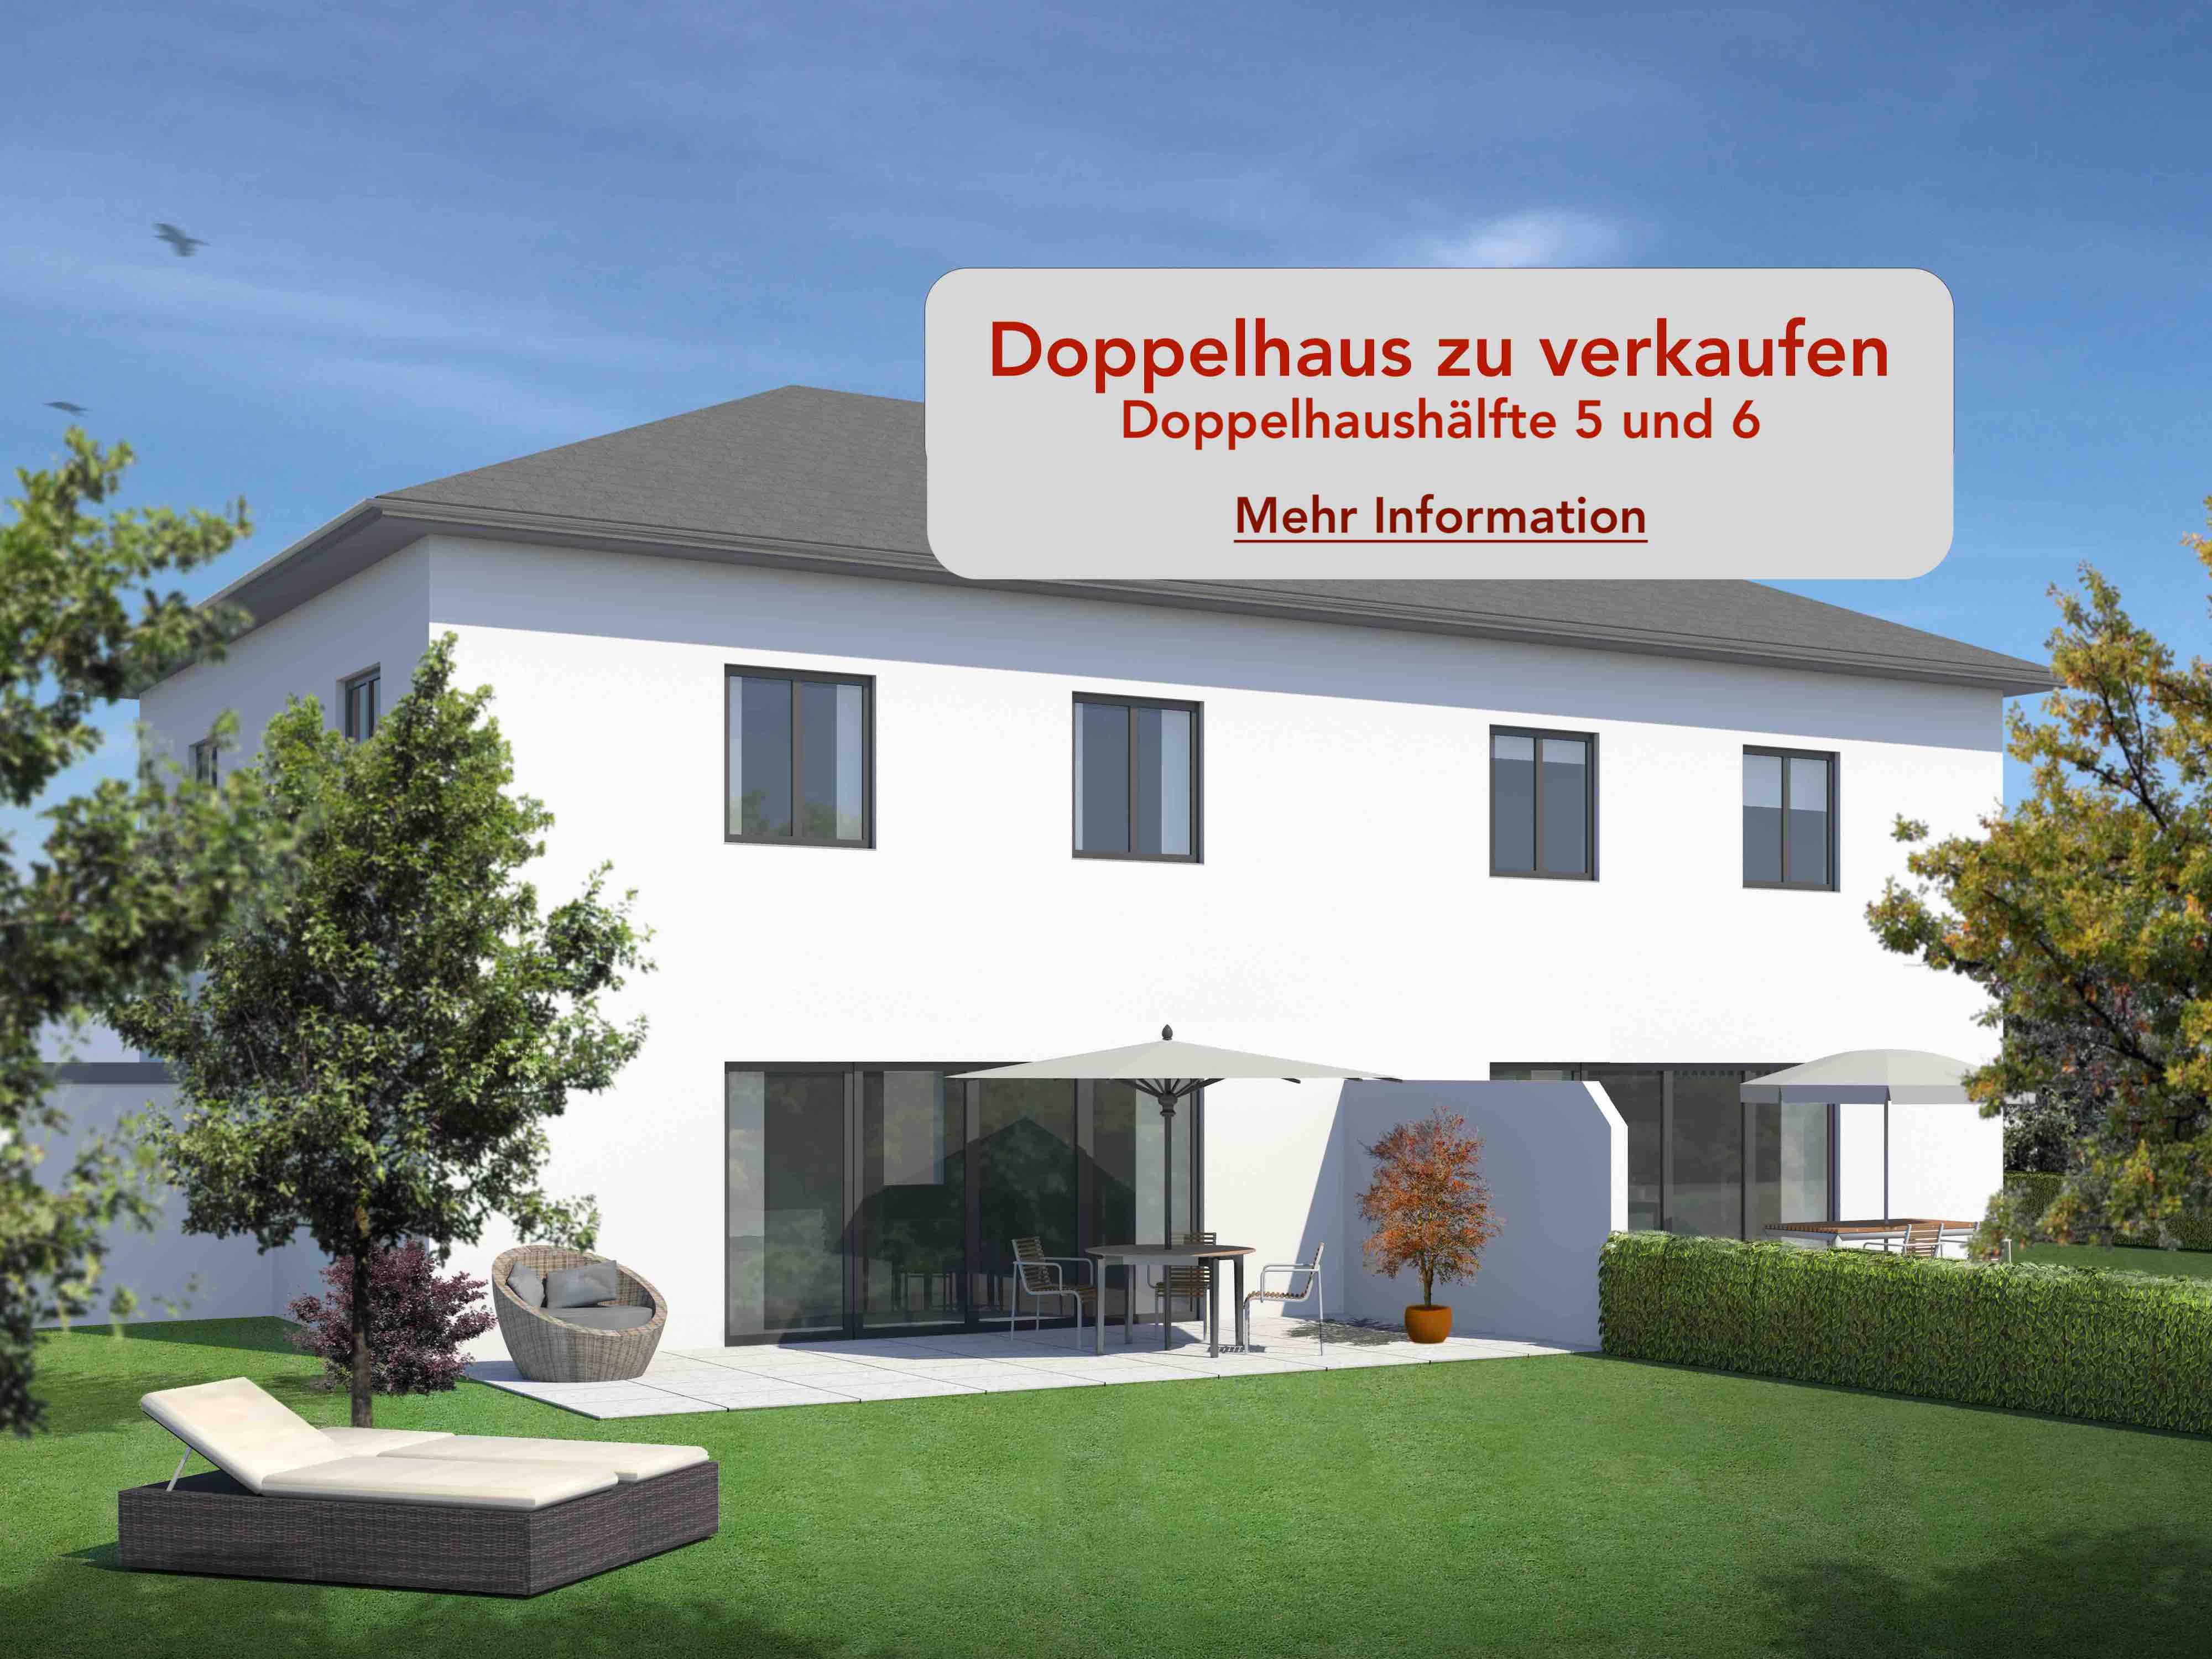 2 Doppelhaushälften in Walchshofen bei Aichach zu verkaufen